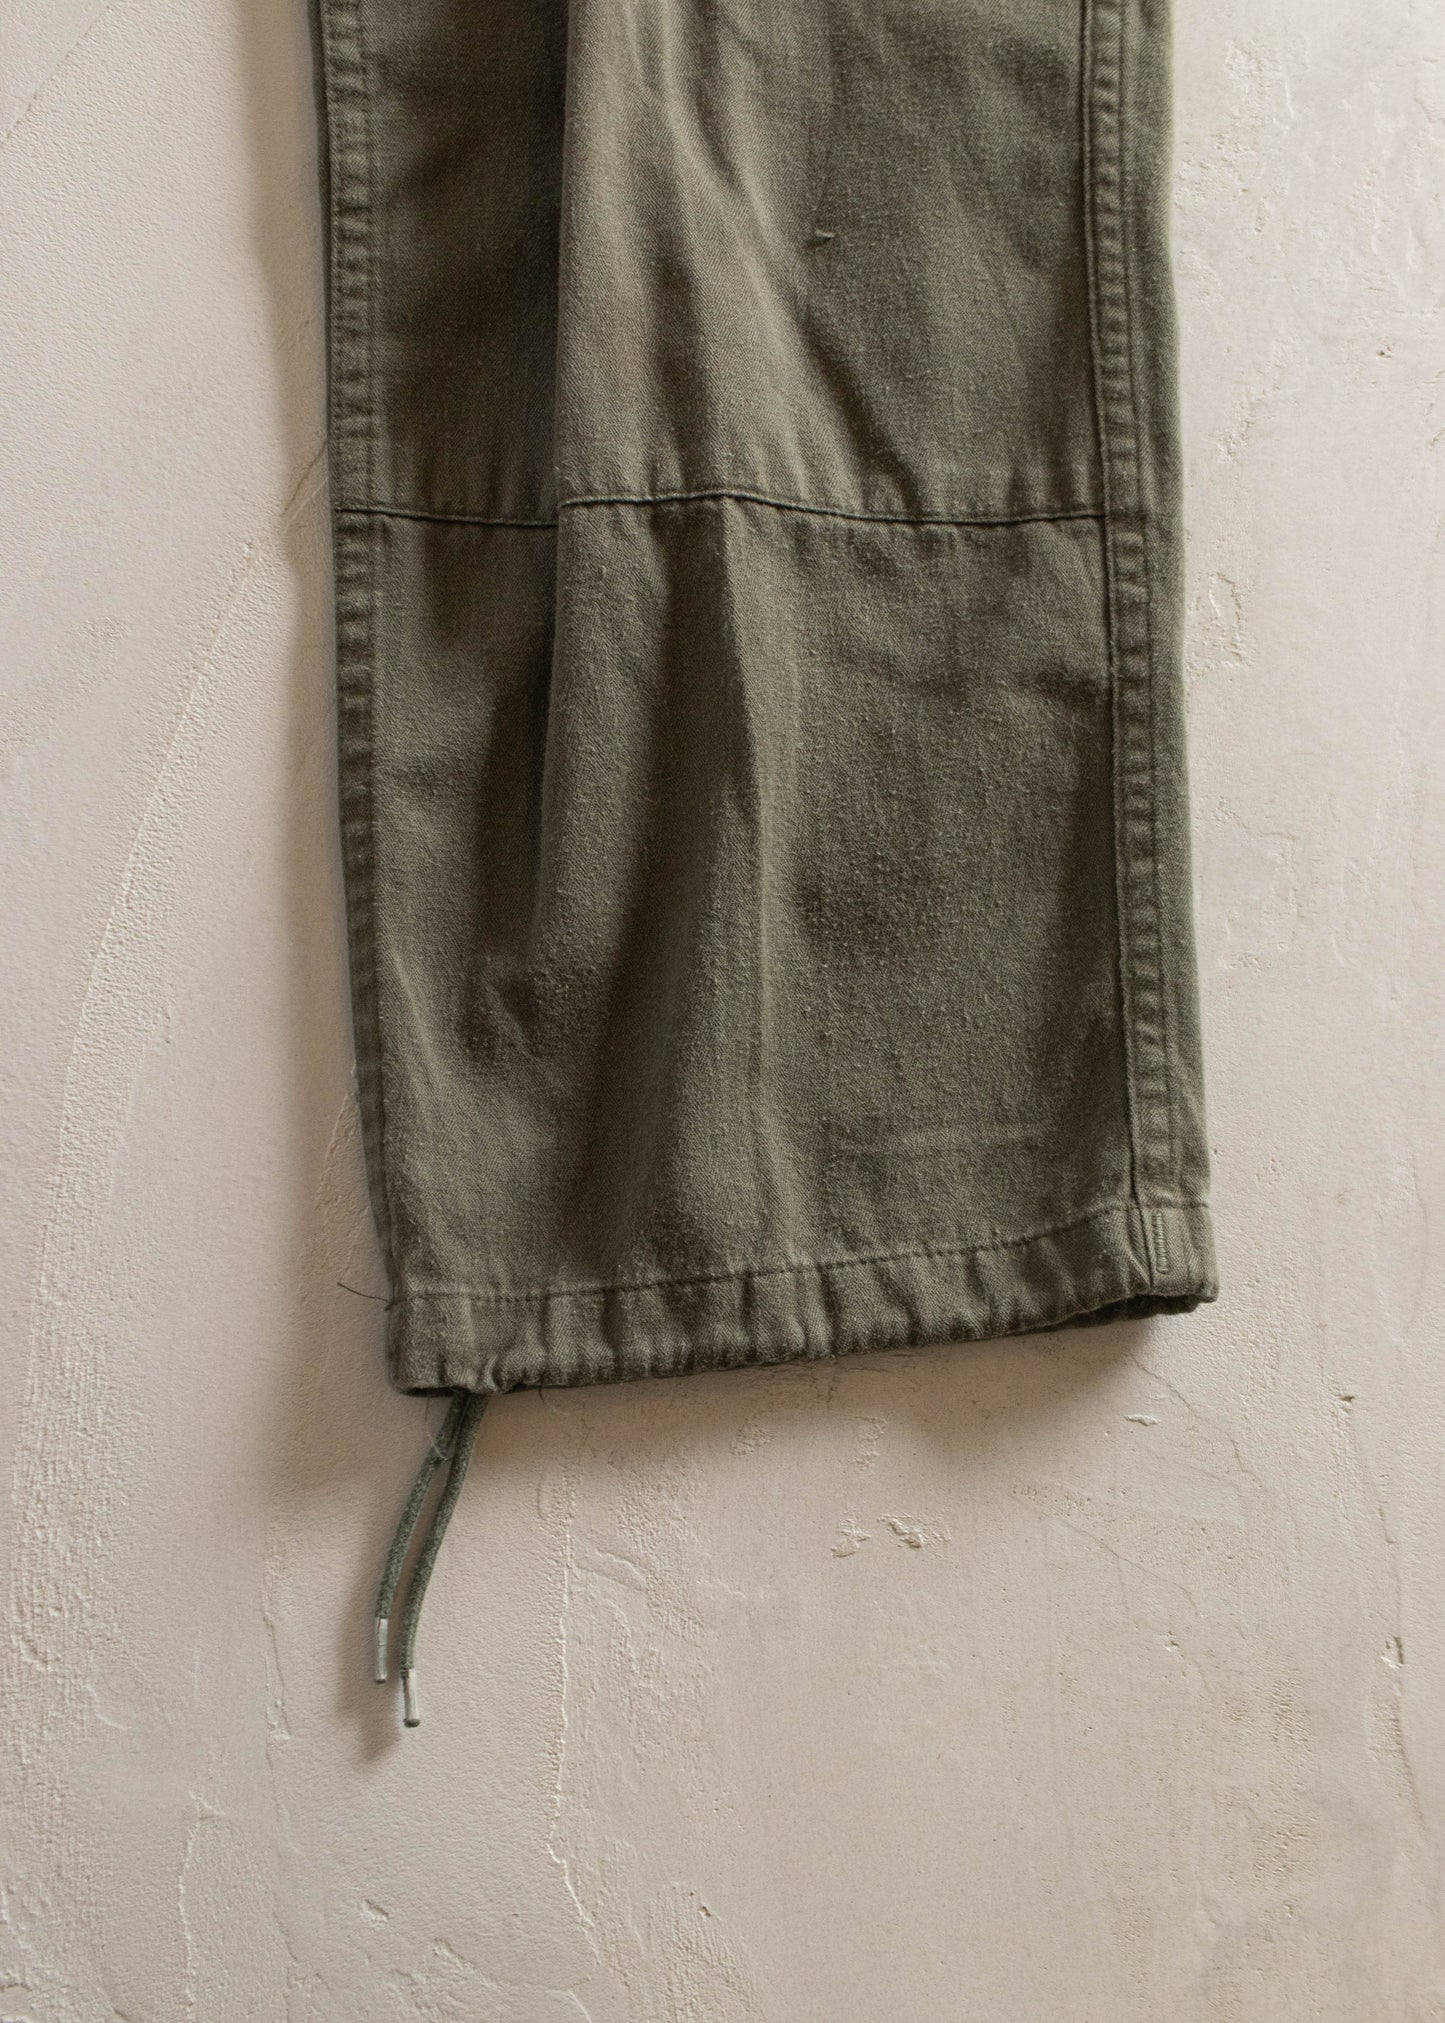 1980 Paul Royé HBT French Military Cargo Pants Size Women's 27 Men's 30